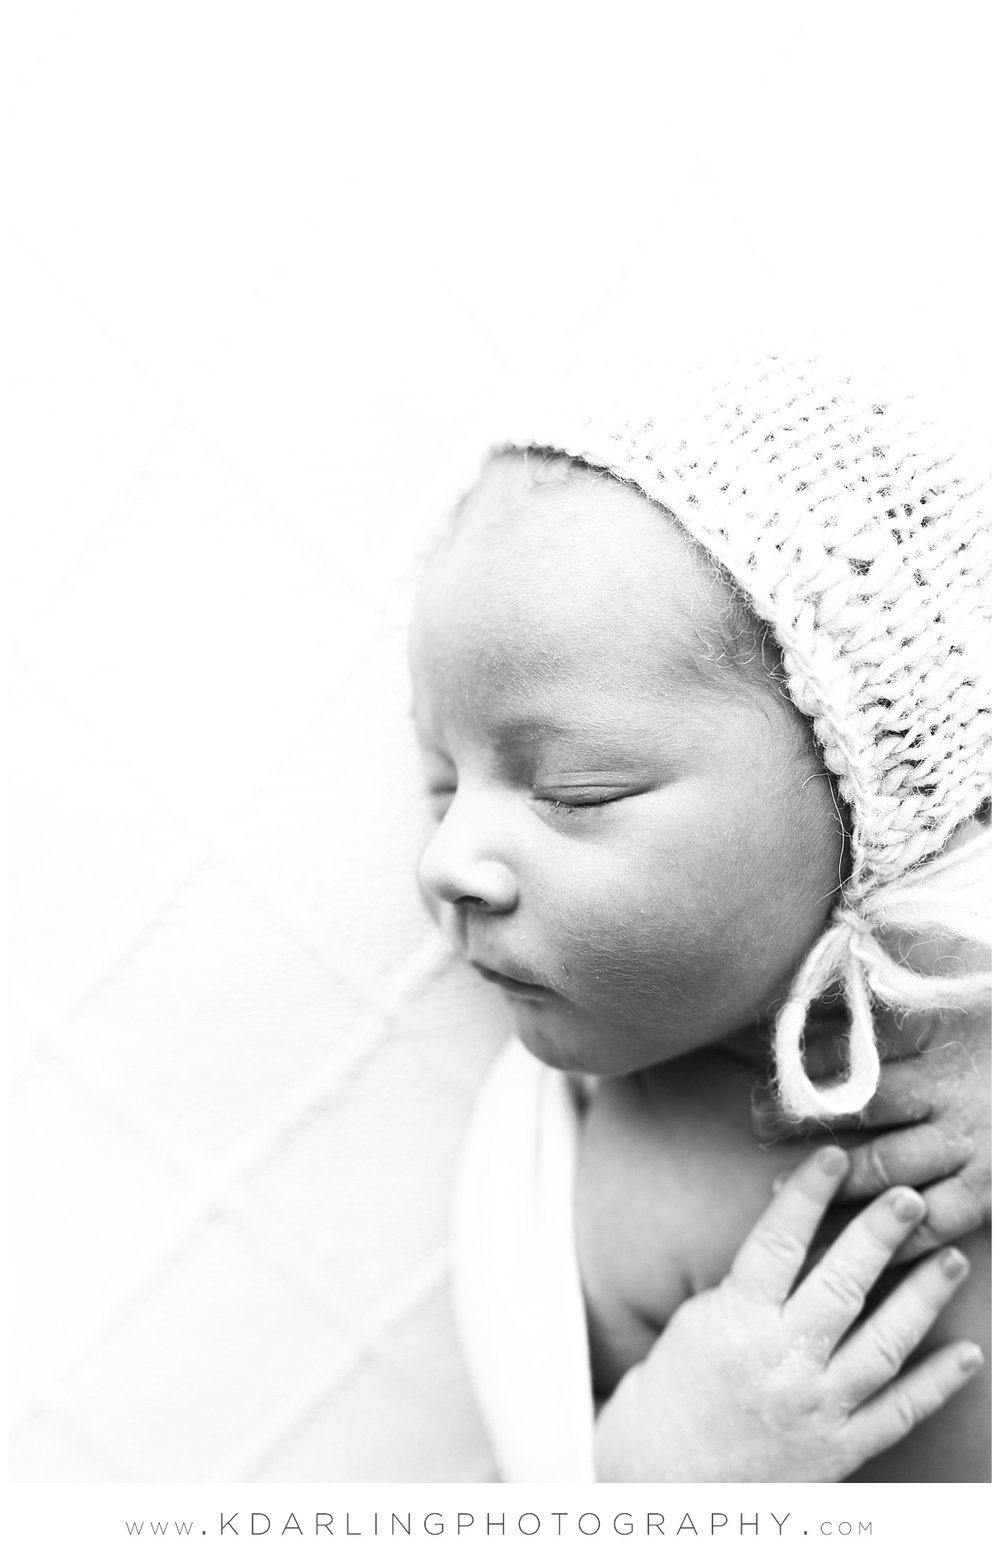 Profile of newborn baby boy wearing bonnet